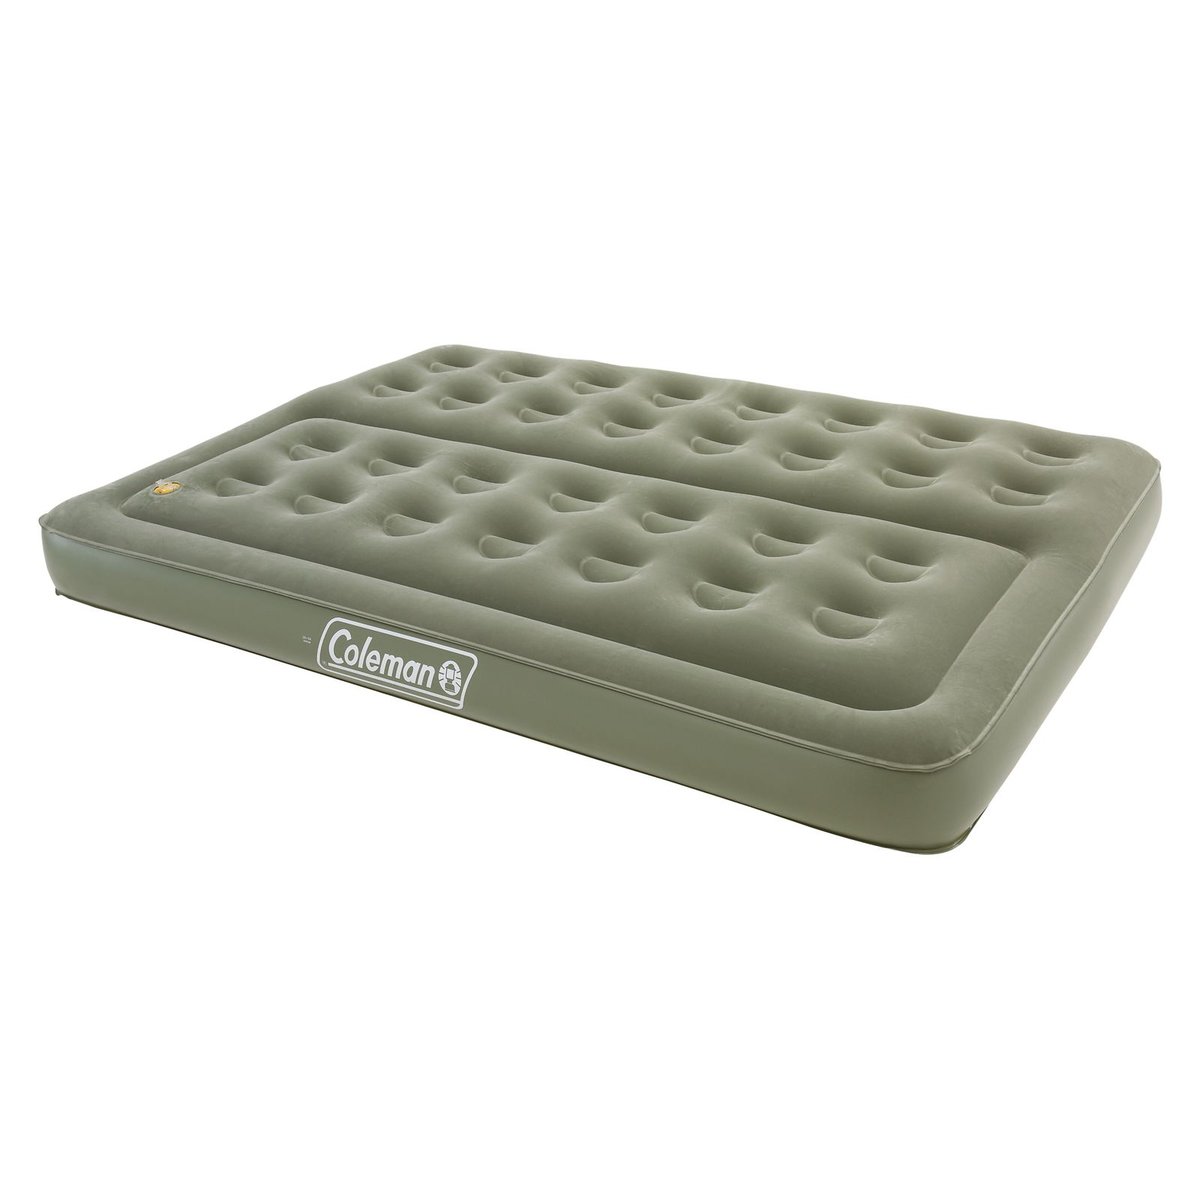 Coleman Materac Comfort Bed Double 188 x 137 x 22 cm zielony 2000025182